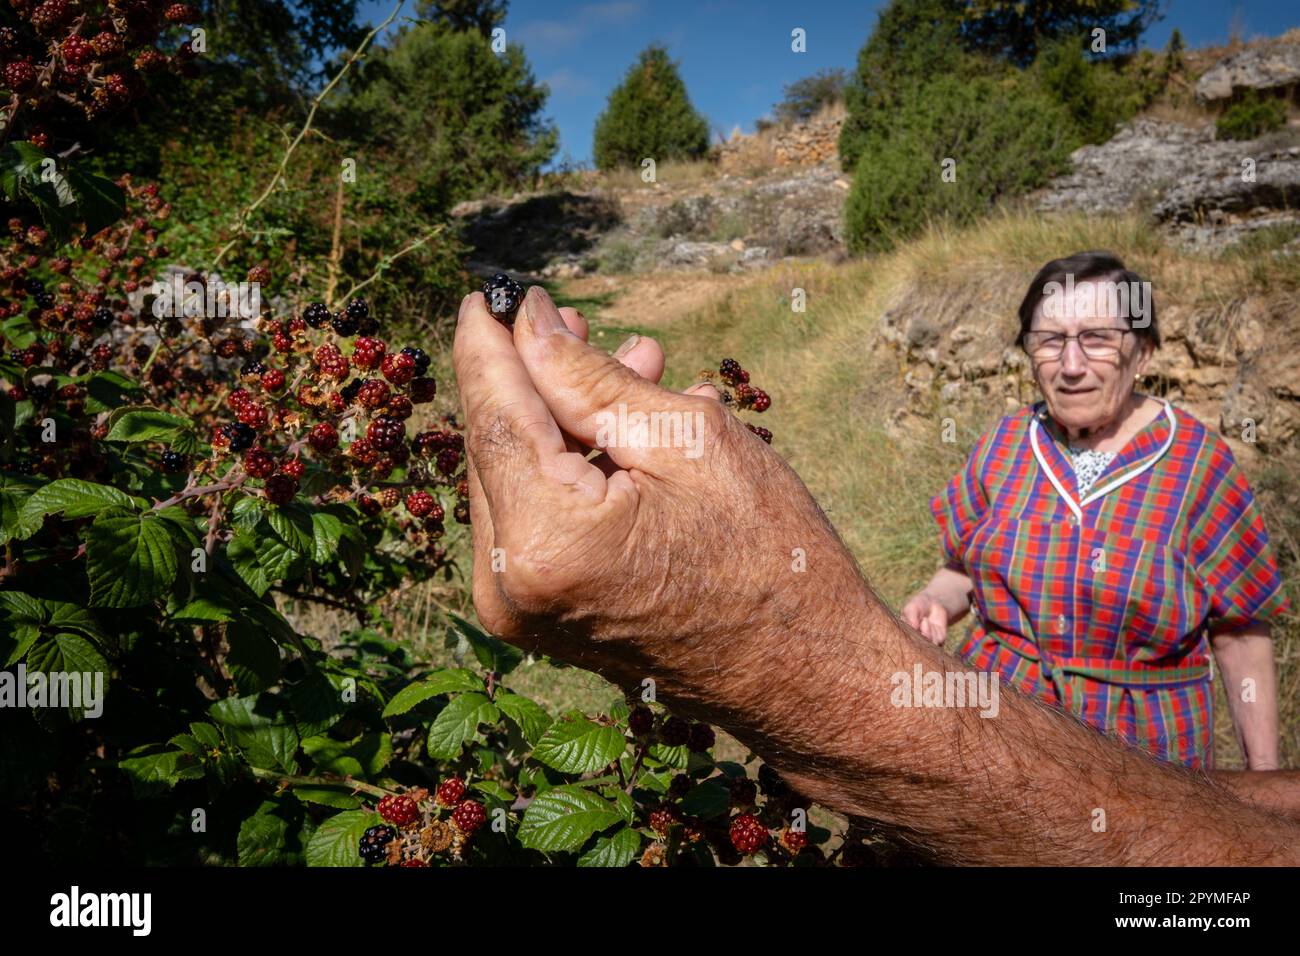 recolectando zarzamora (Rubus fruticosus), barranco de la cascada, Chaorna, Soria,  comunidad autónoma de Castilla y León, Spain, Europe Stock Photo